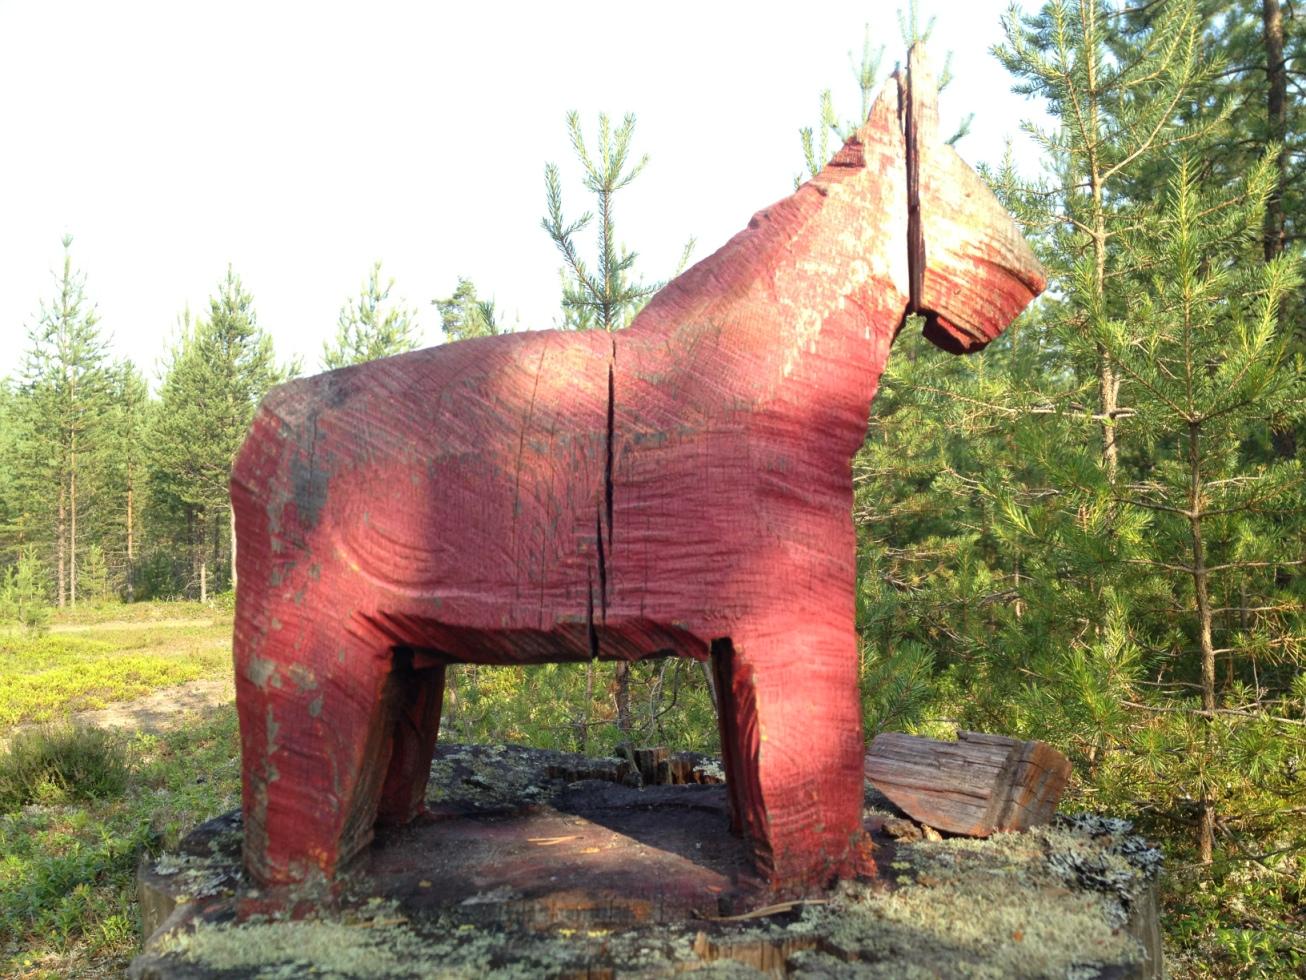 Denna röda dalahäst utanför Mora är utskuren direkt ur trädet.